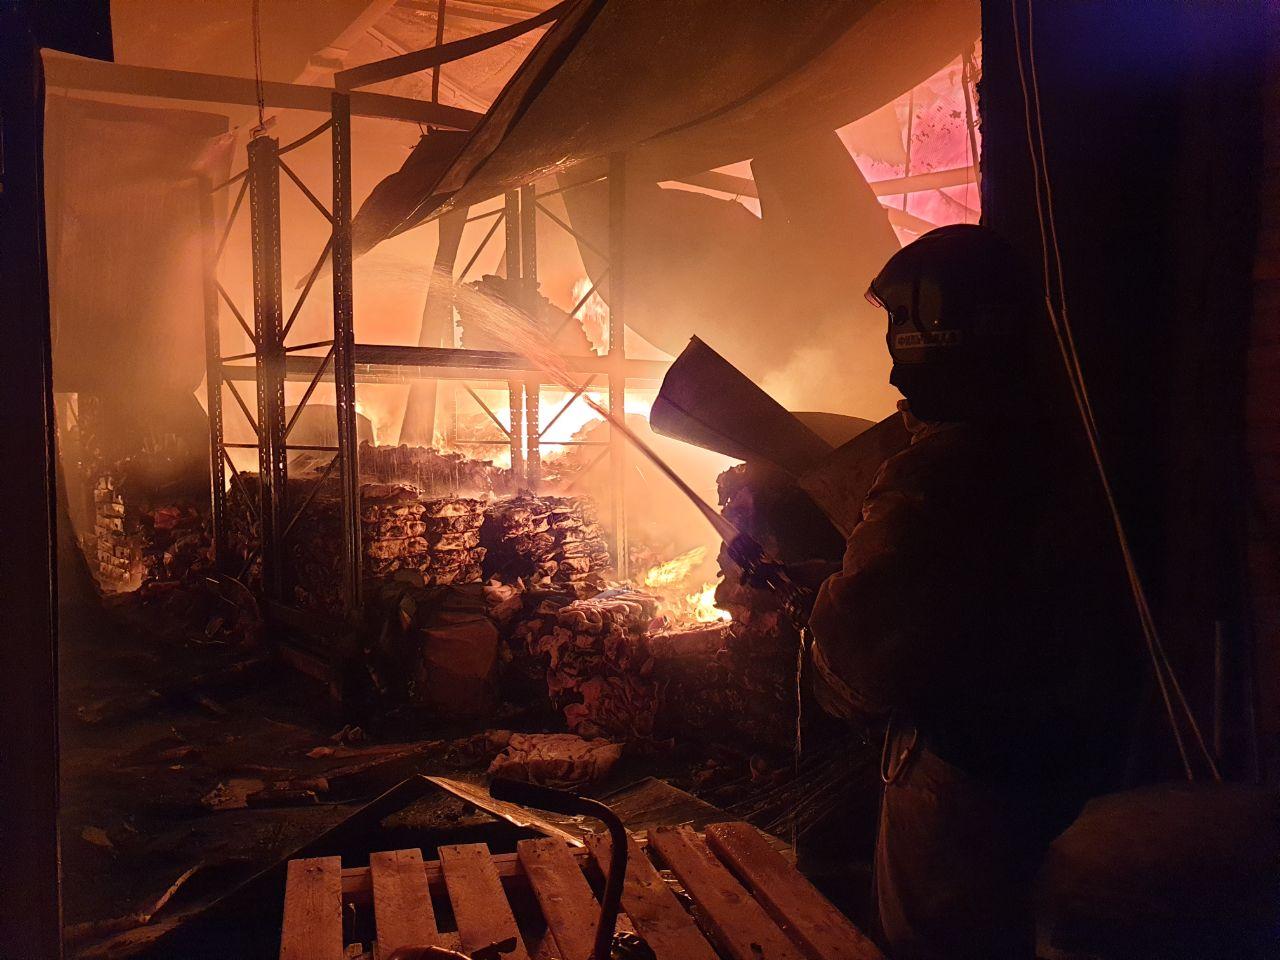 Происшествия, Томские новости, пожар загорелся сгорели пострадали сводка происшествий пожары в Томской области В Томске загорелся цех по переработке мяса